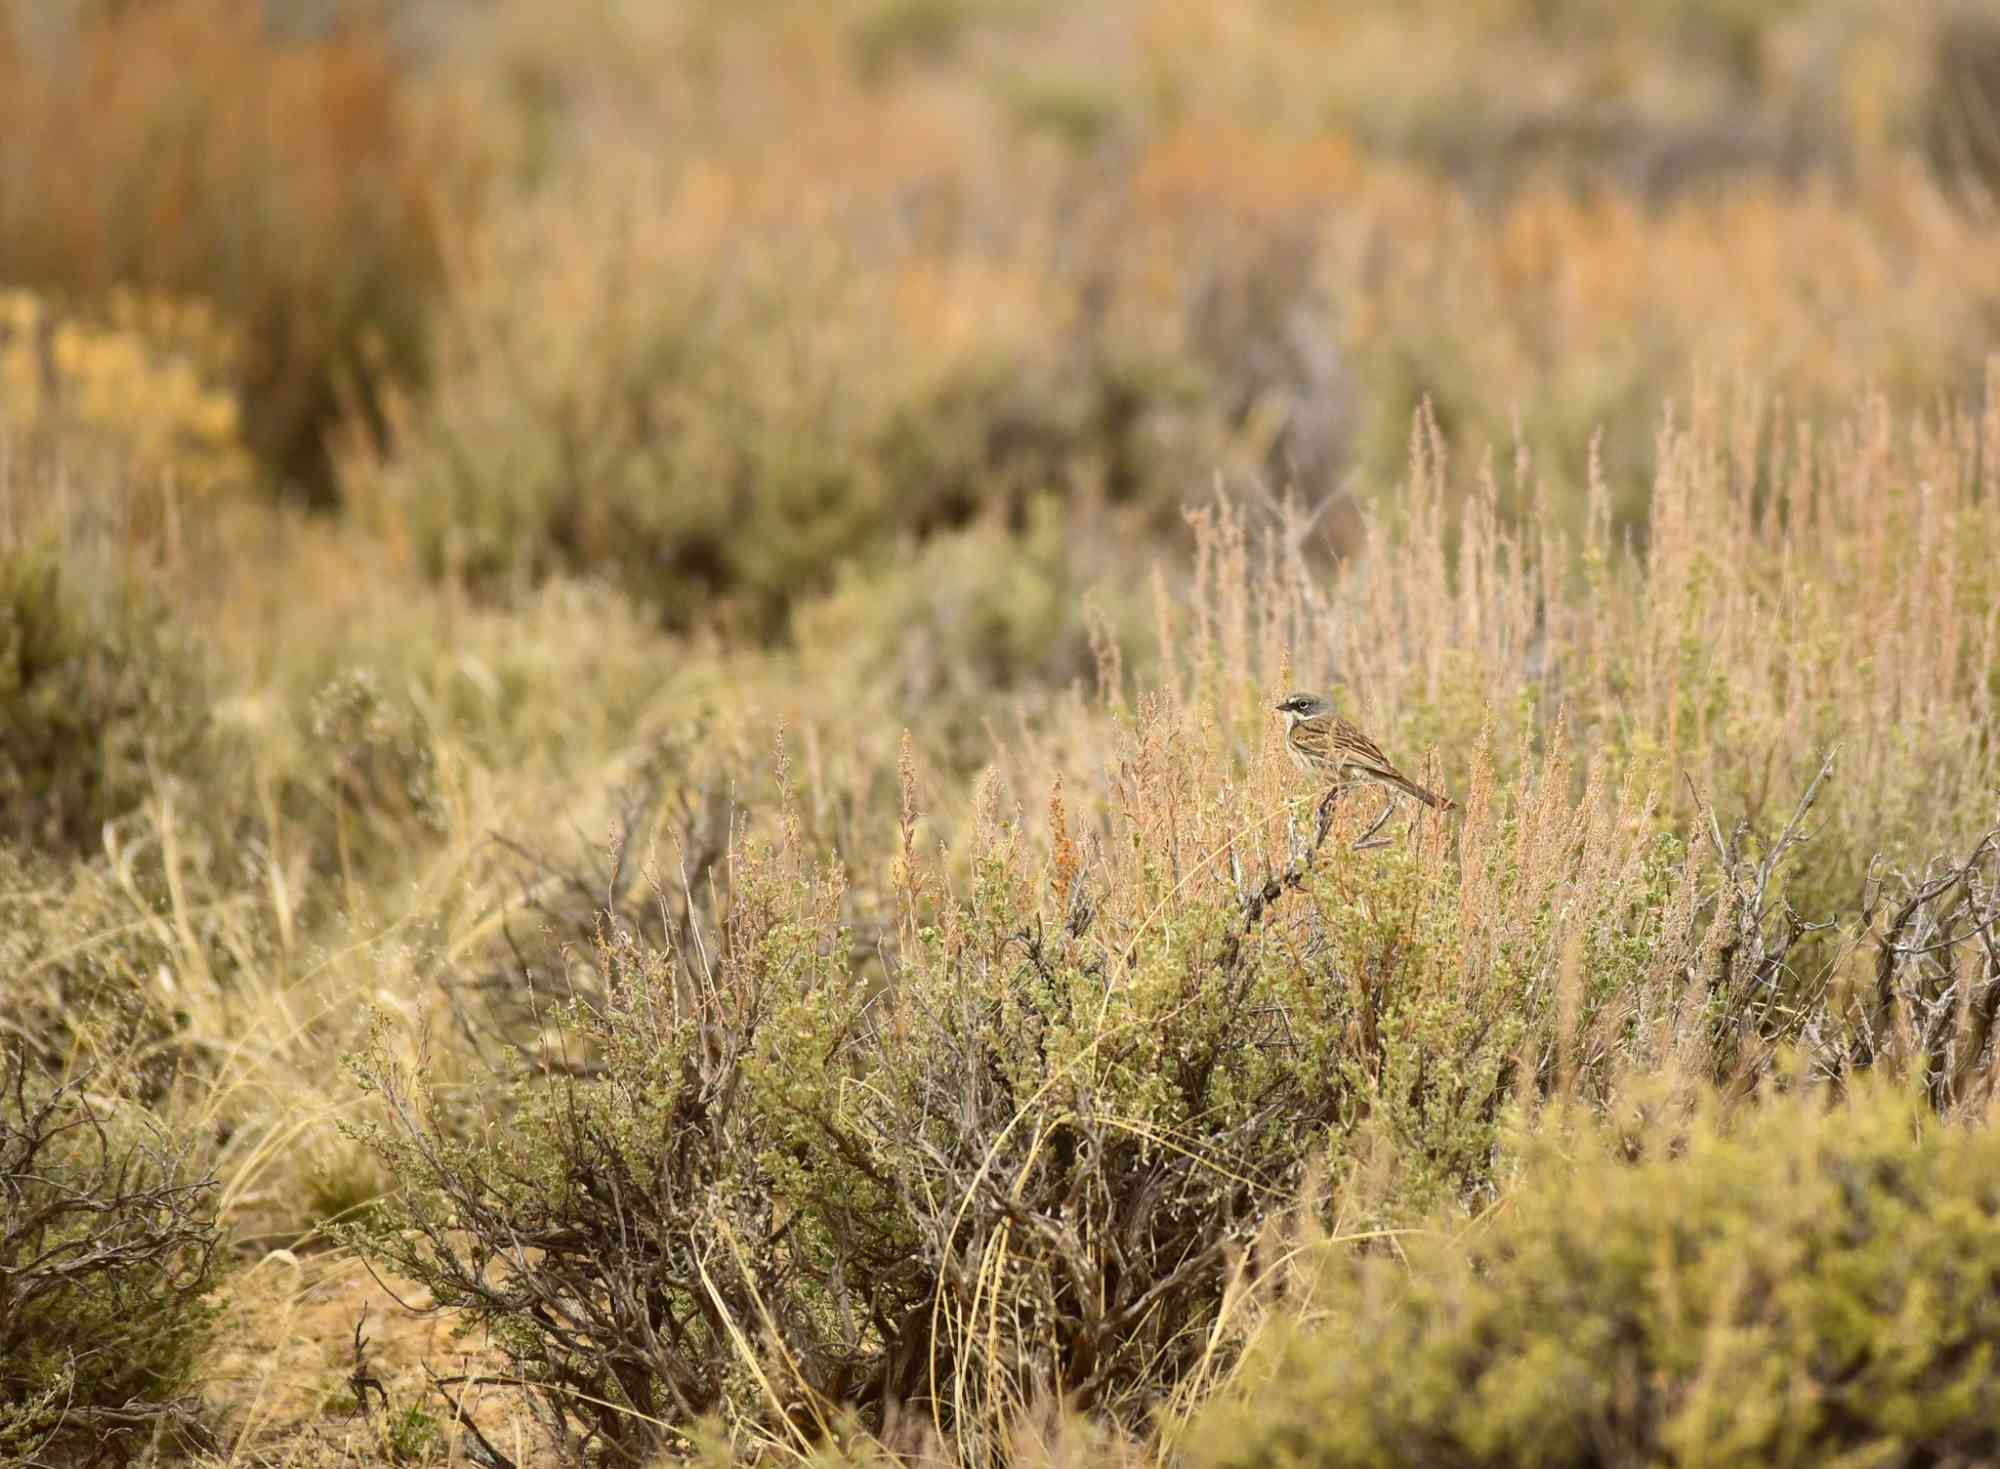 Sagebrush sparrow at Seedskadee National Wildlife Refuge